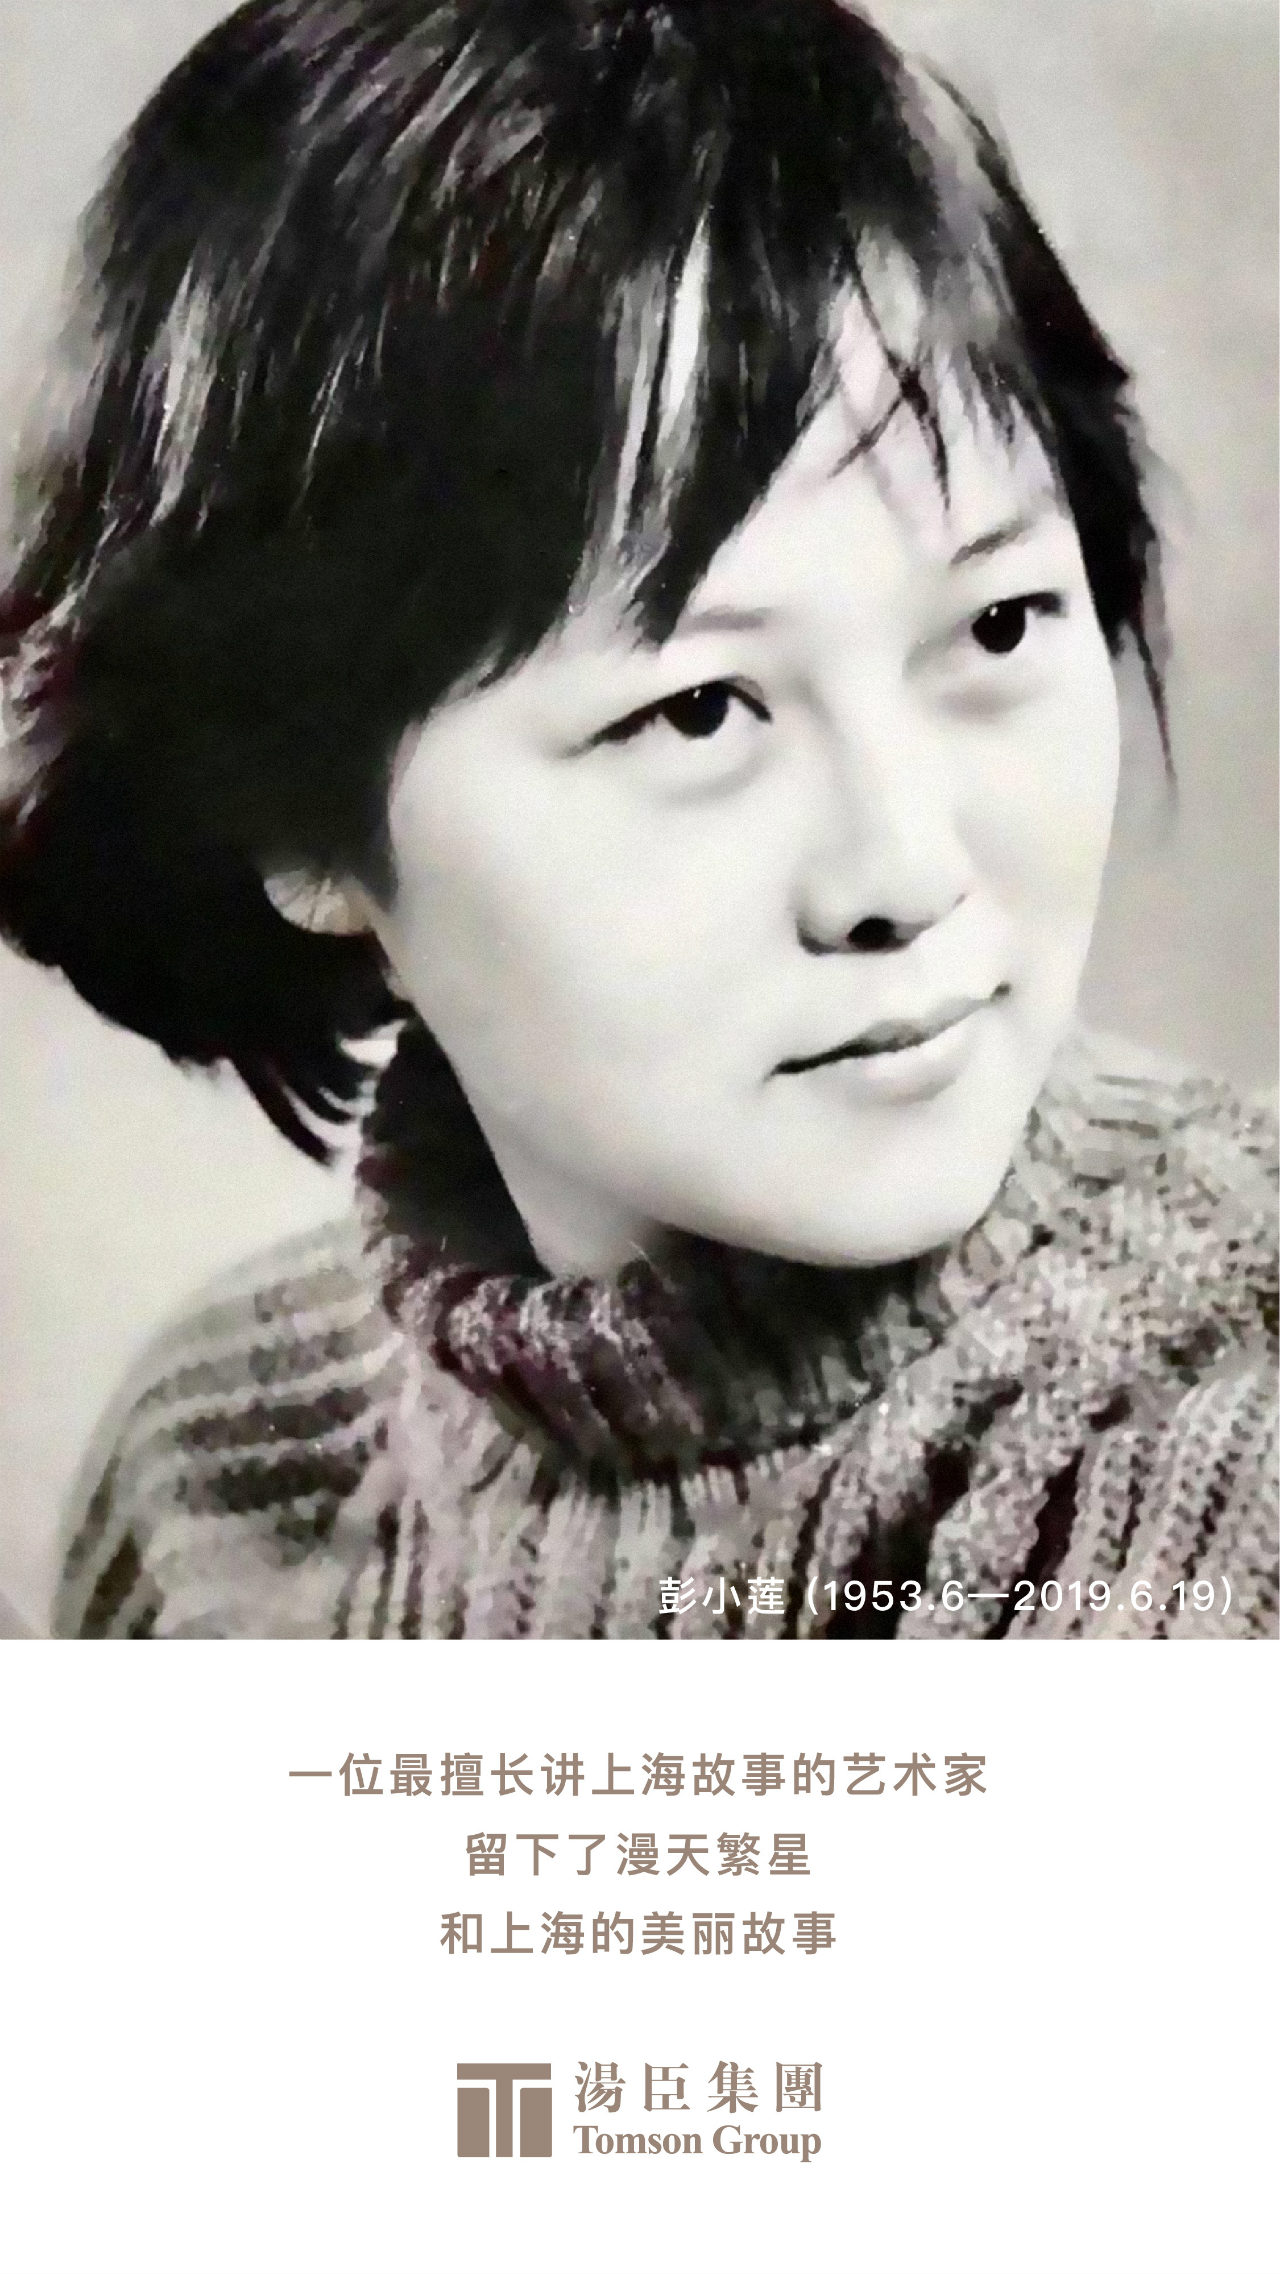 In memory of Peng Xiaolian